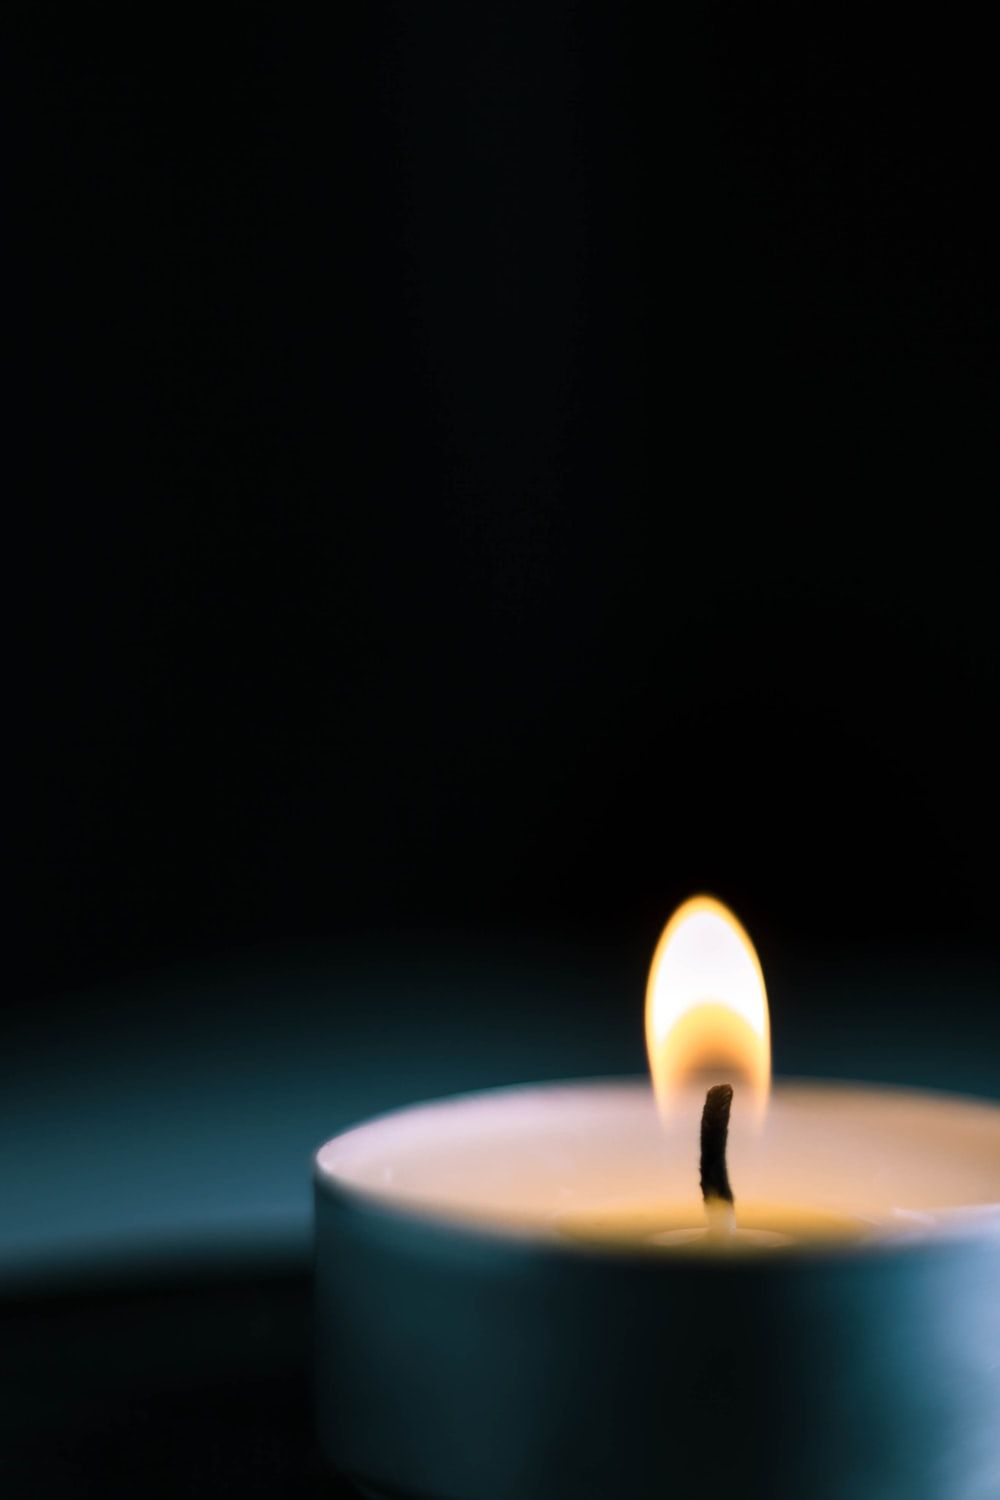 عکس شمع روشن بدون متن برای تسلیت به عزیز از دست داده